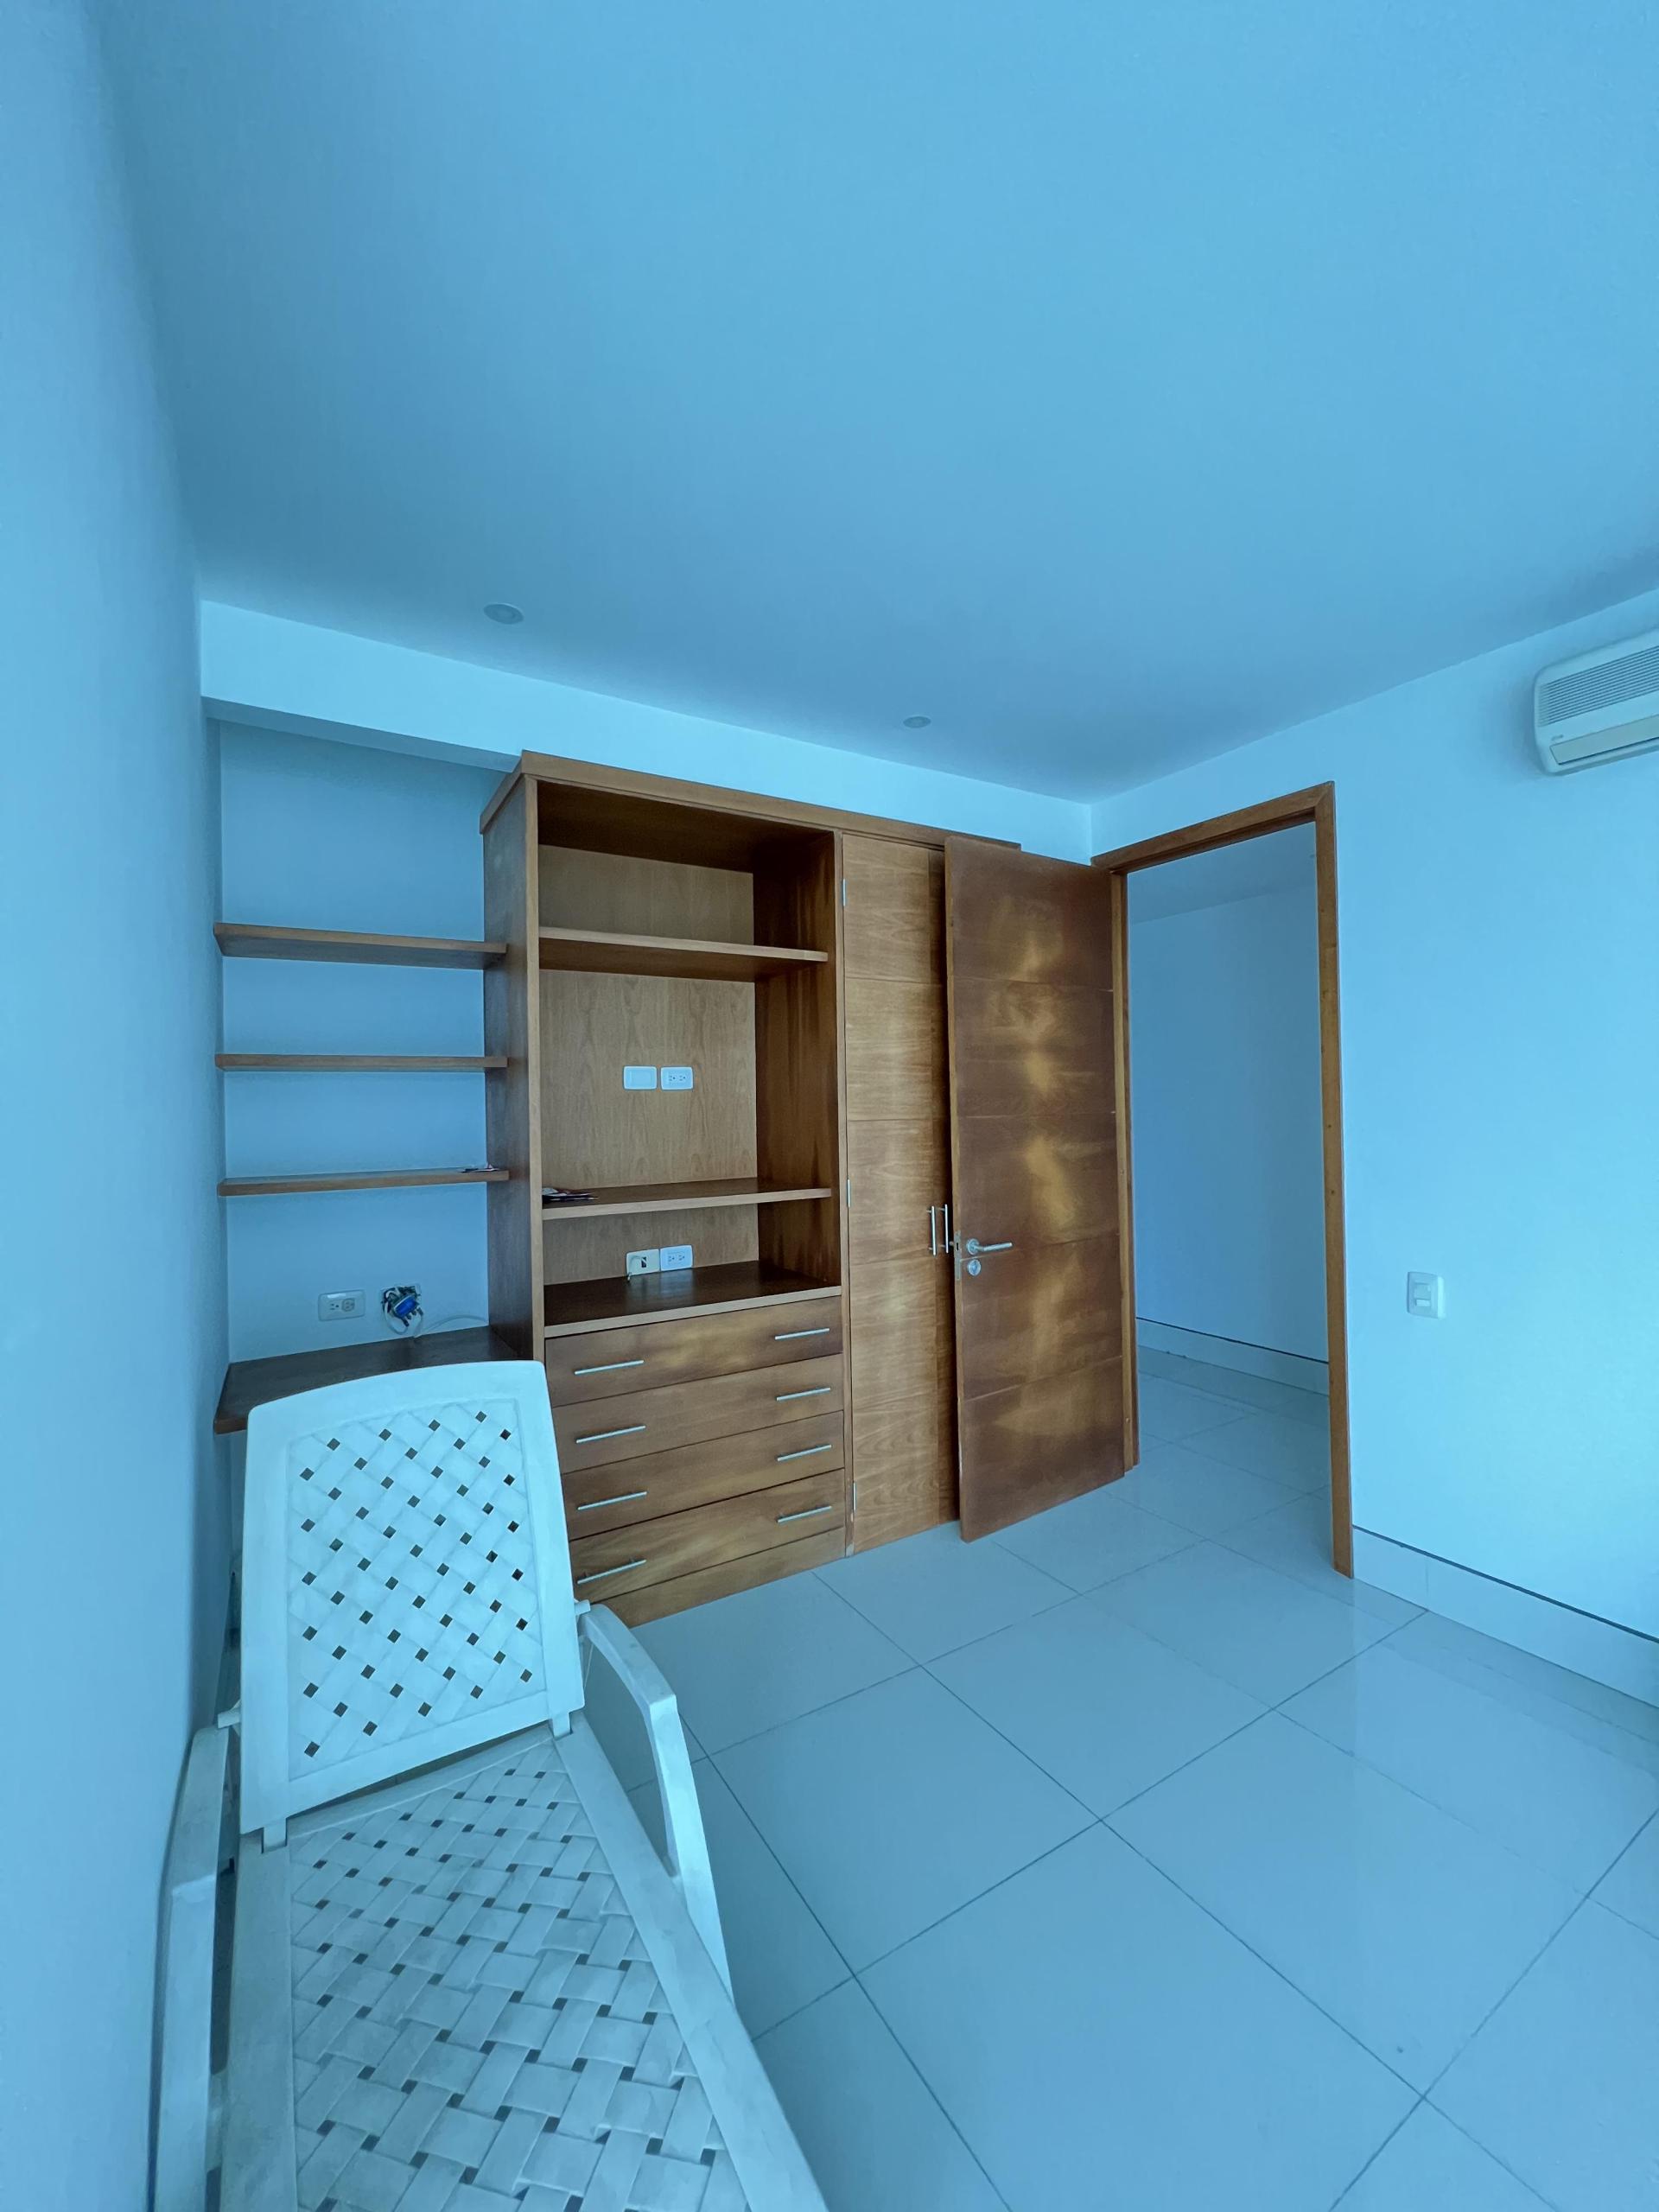 CARTAGENA – Bocagrande – Terrazas del Mar – spacious 3 bedroom